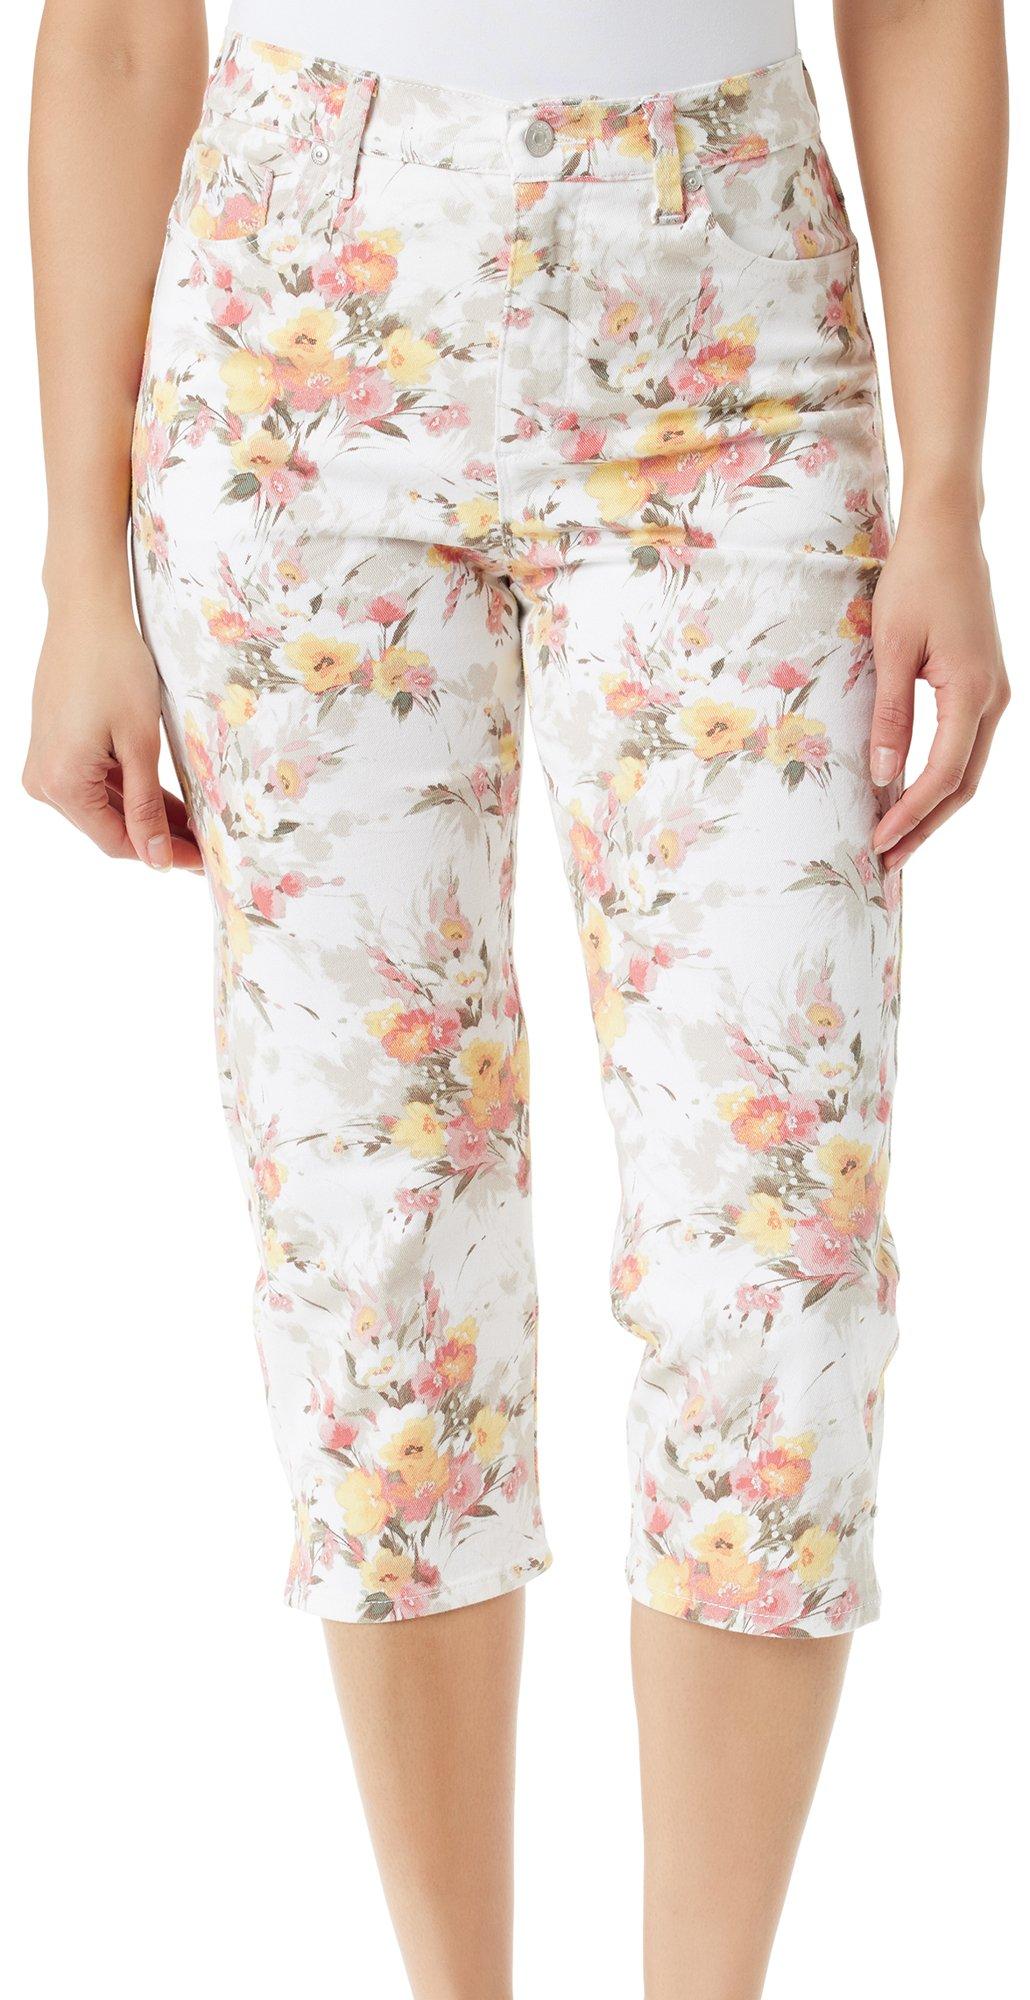 Dash Women’s Capri Pants Size 10 Cute Leg Bottoms with Ties White